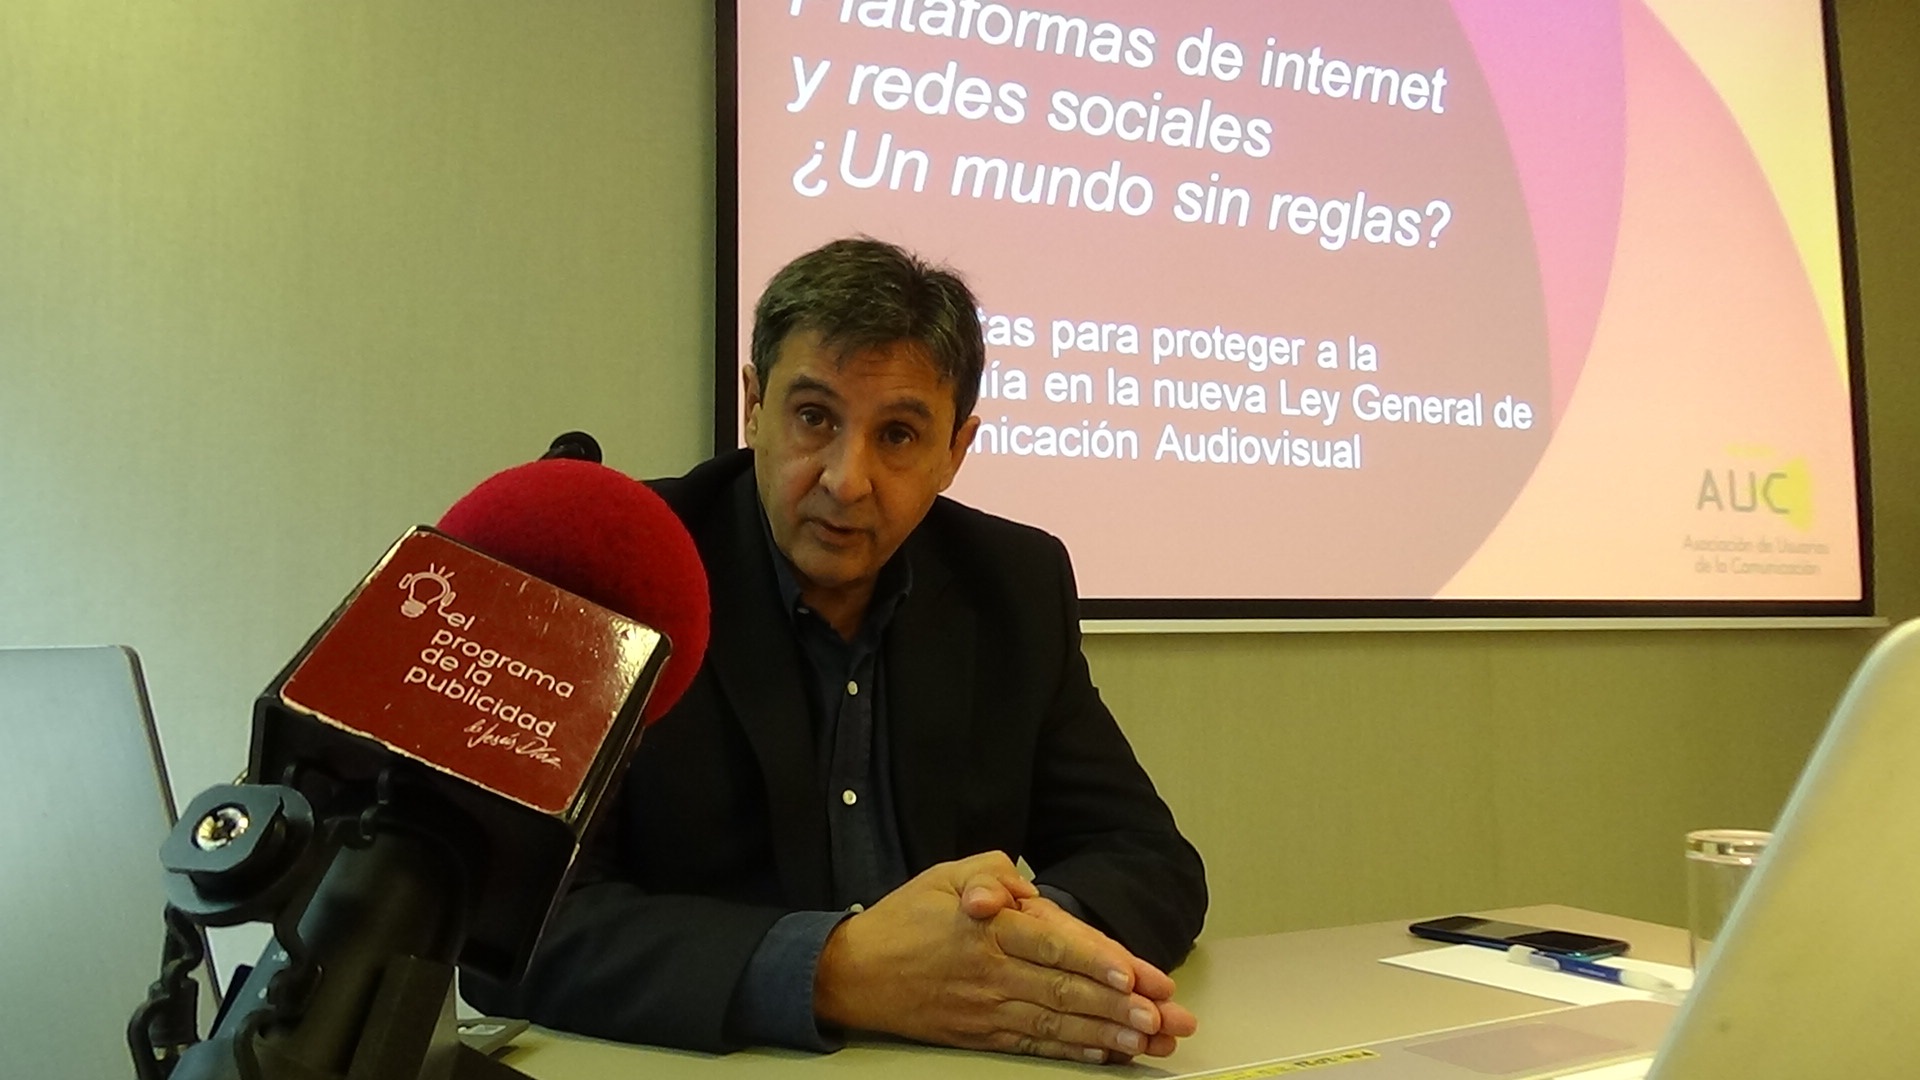 Alejandro Perales, auc, ley audiovisual, plataformas, reglas, programapublicidad